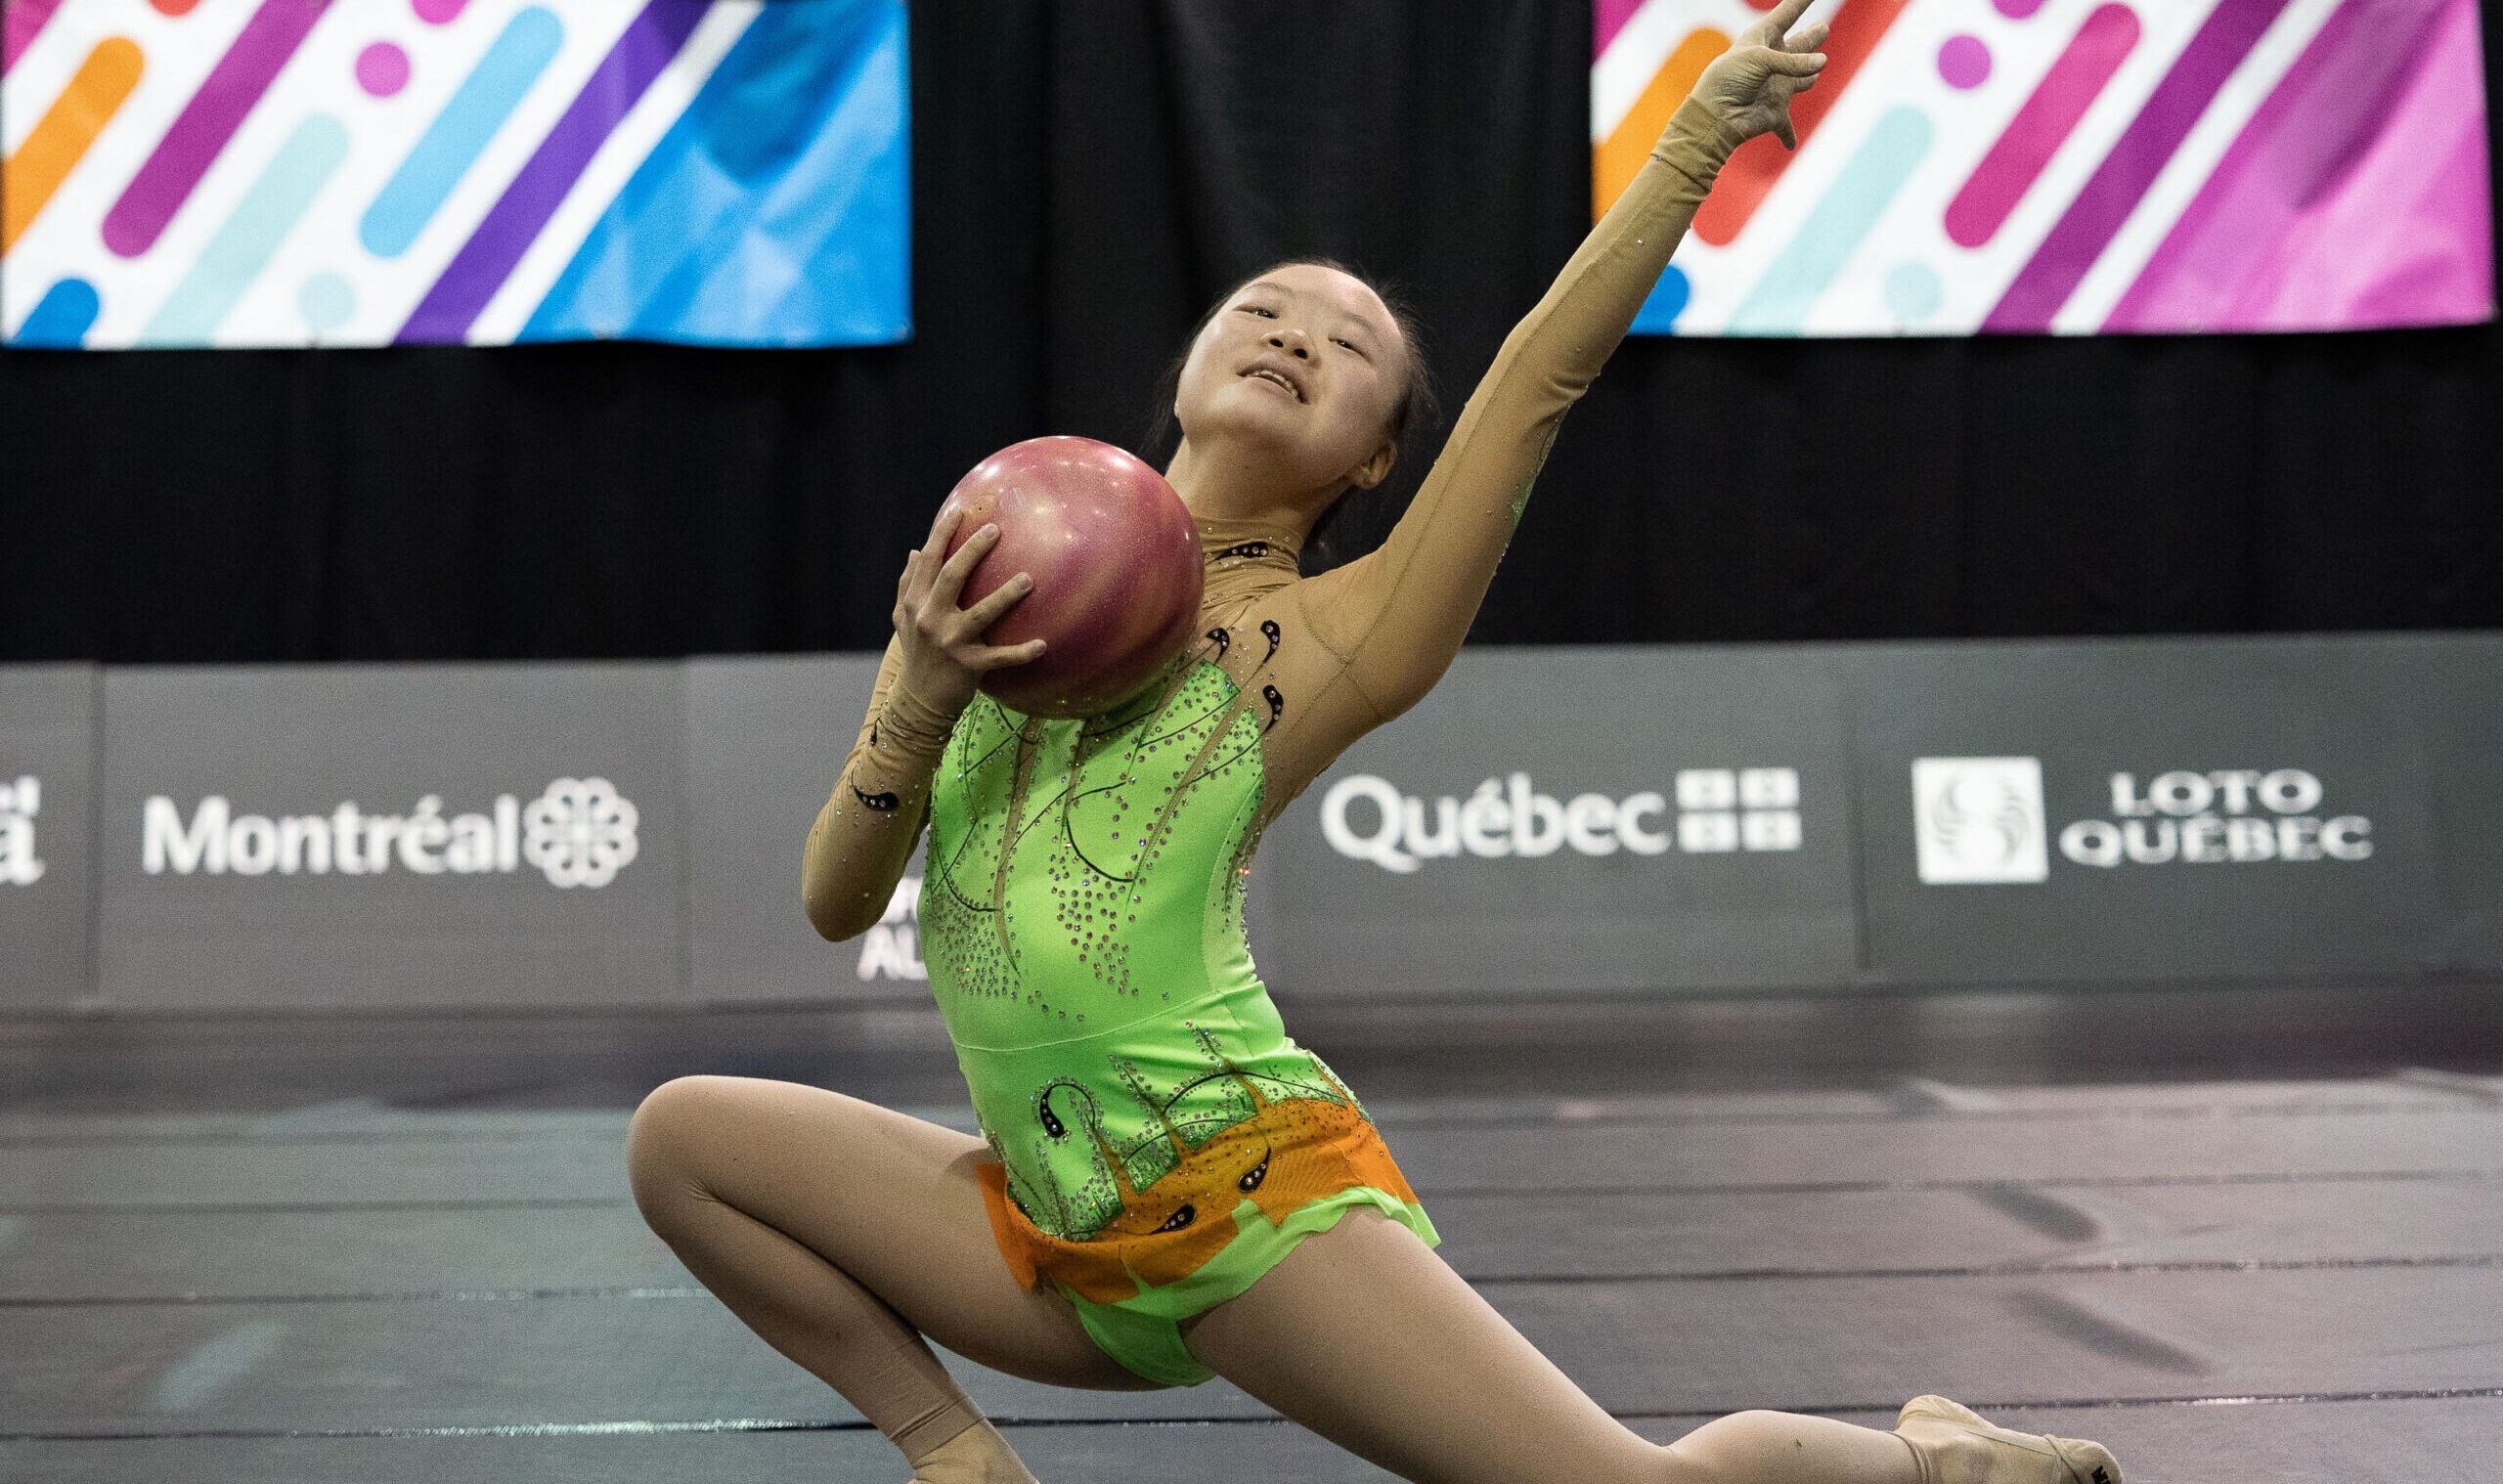 Une athlète agite un ruban pendant une épreuve de gymnastique rythmique.